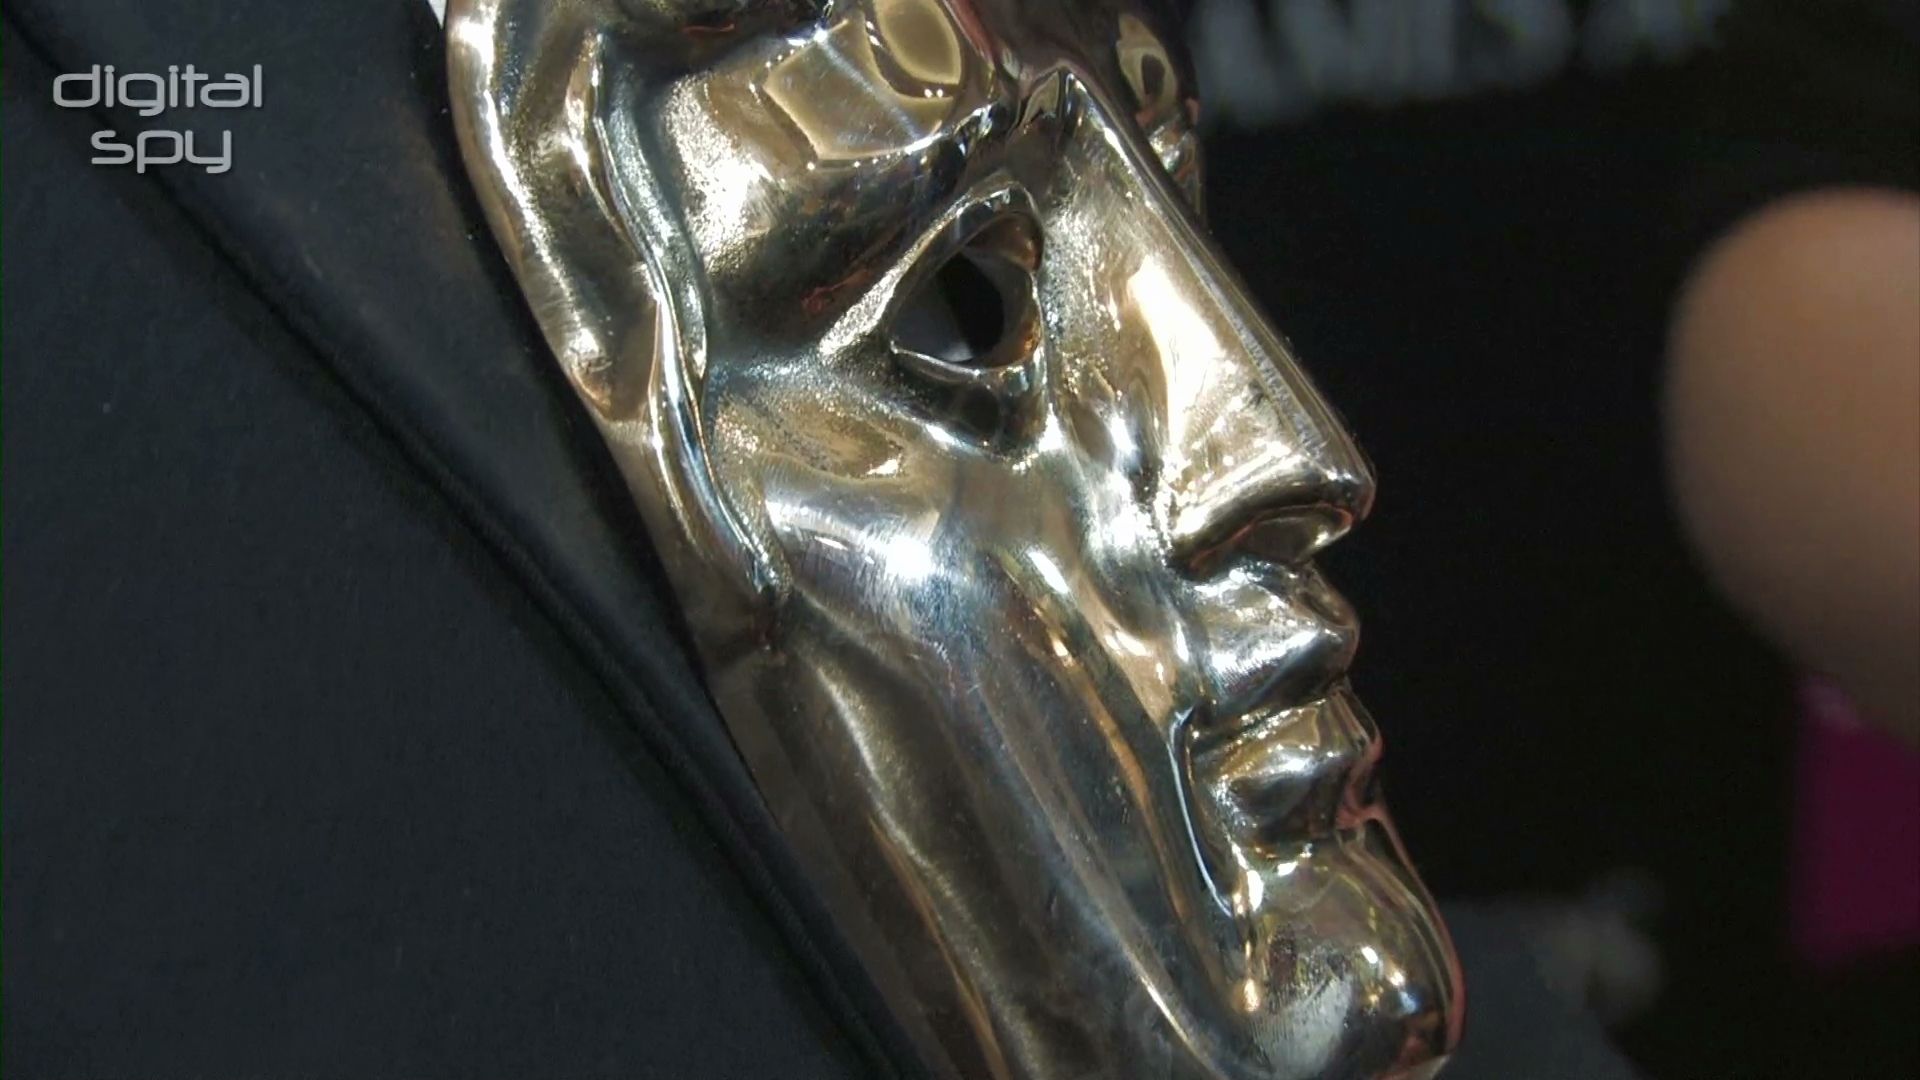 Danny Wallace at the BAFTA Games Awards - BAFTA Games Awards 2013